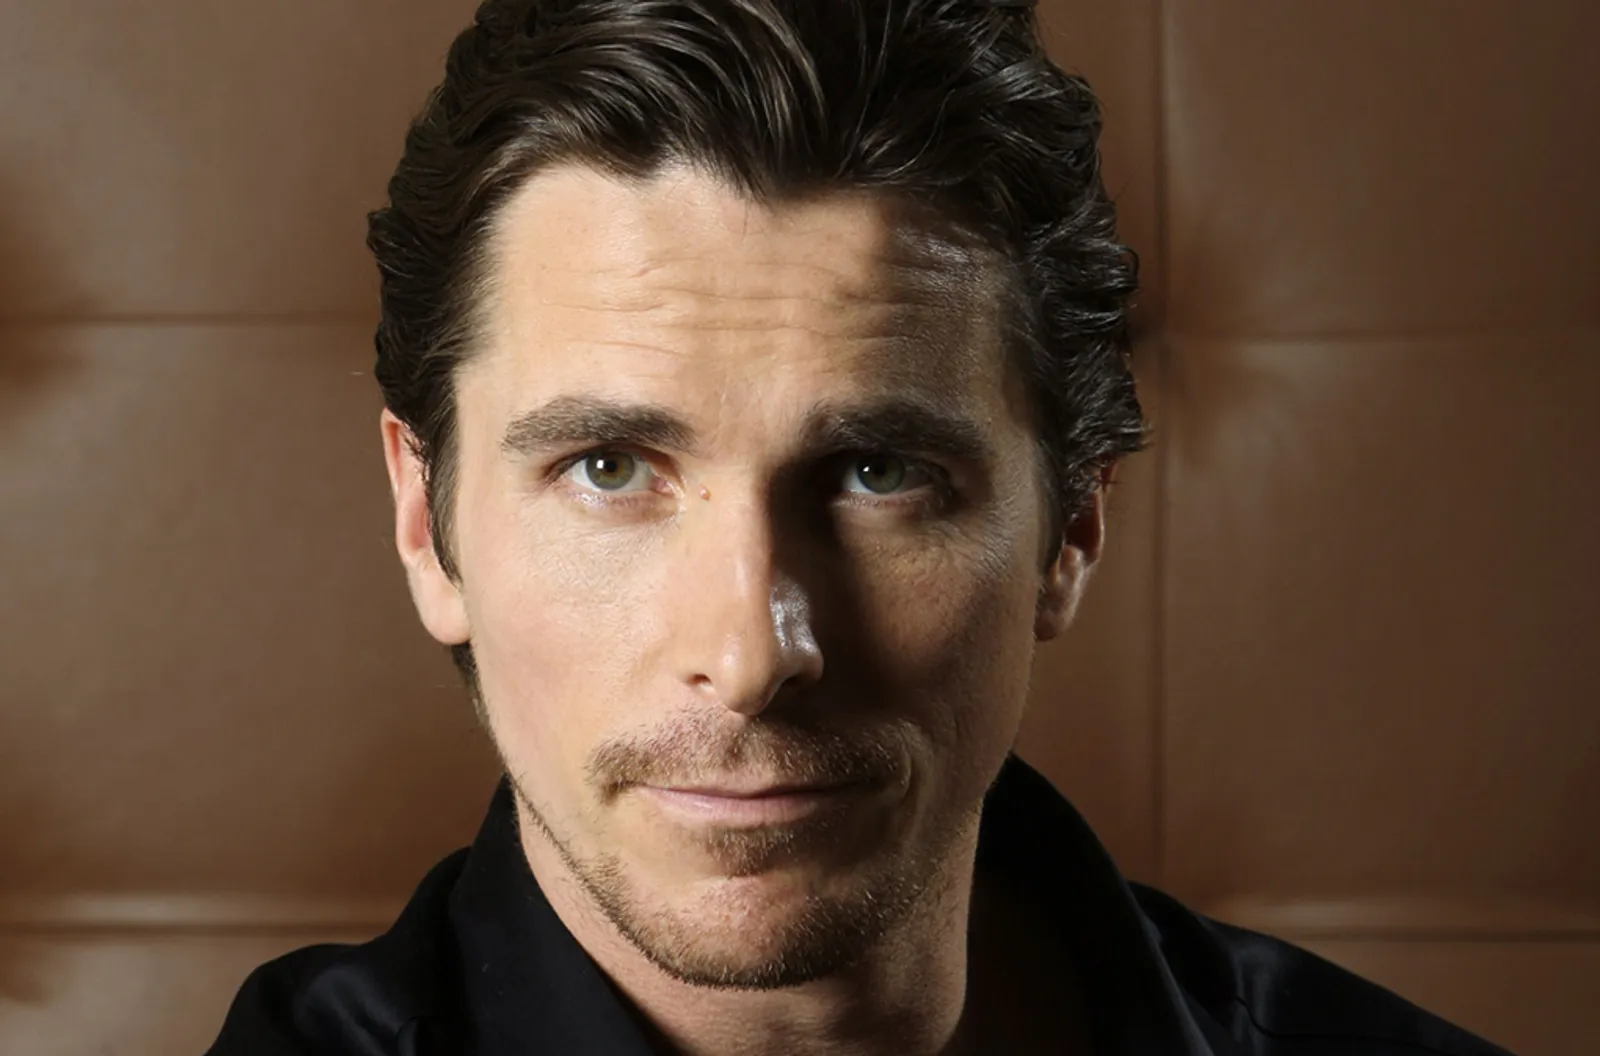 Naksir Sama Christian Bale? Ini 10 Film-nya yang akan Buat Kamu Tambah Kagum